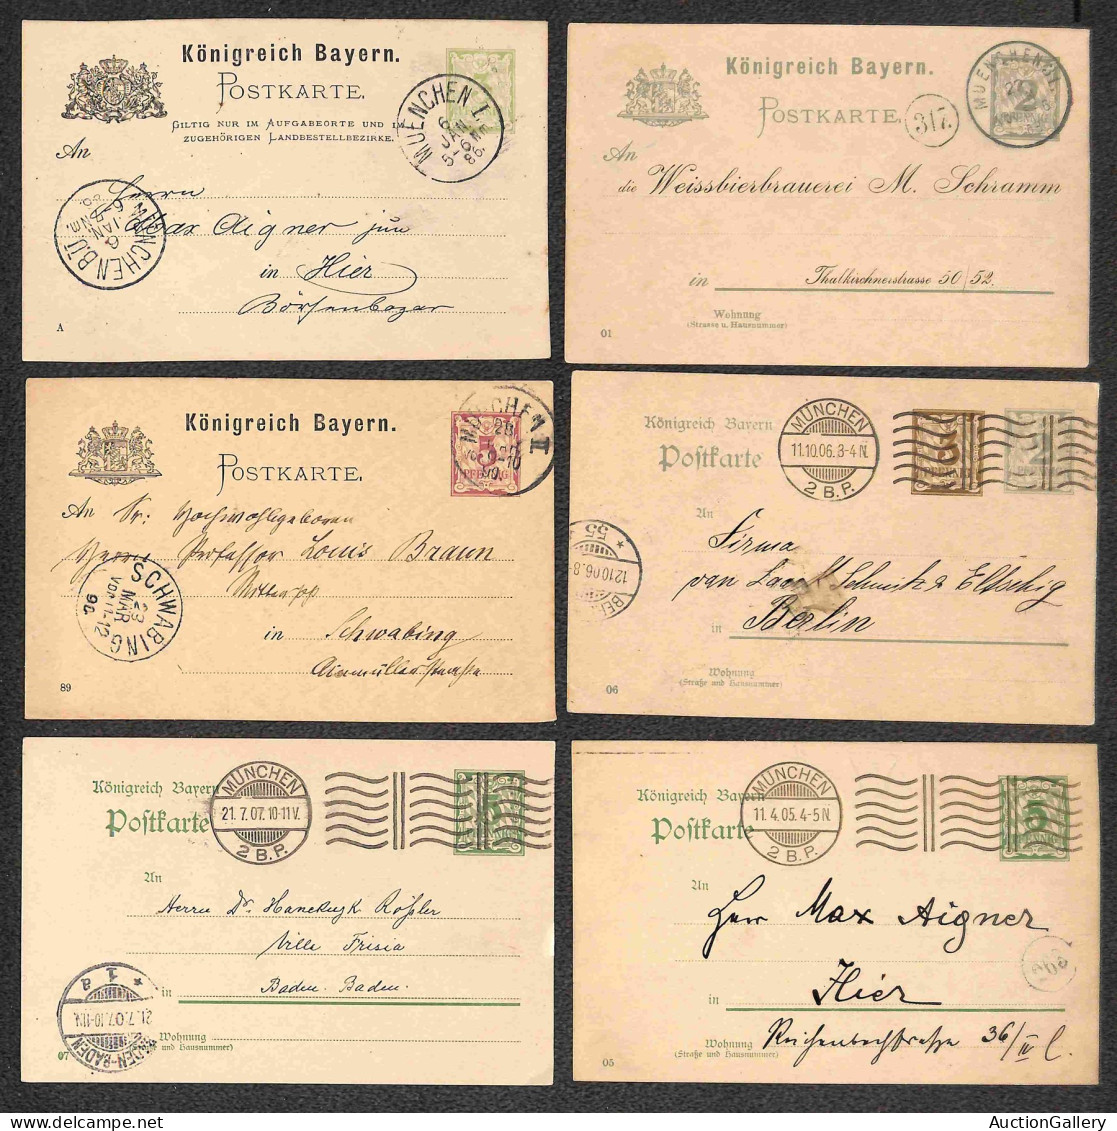 Lotti e Collezioni - Europa e Oltremare - GERMANIA - BAYERN - 1873/1919 - Insieme di 81 Interi Postali di cui 76 cartoli